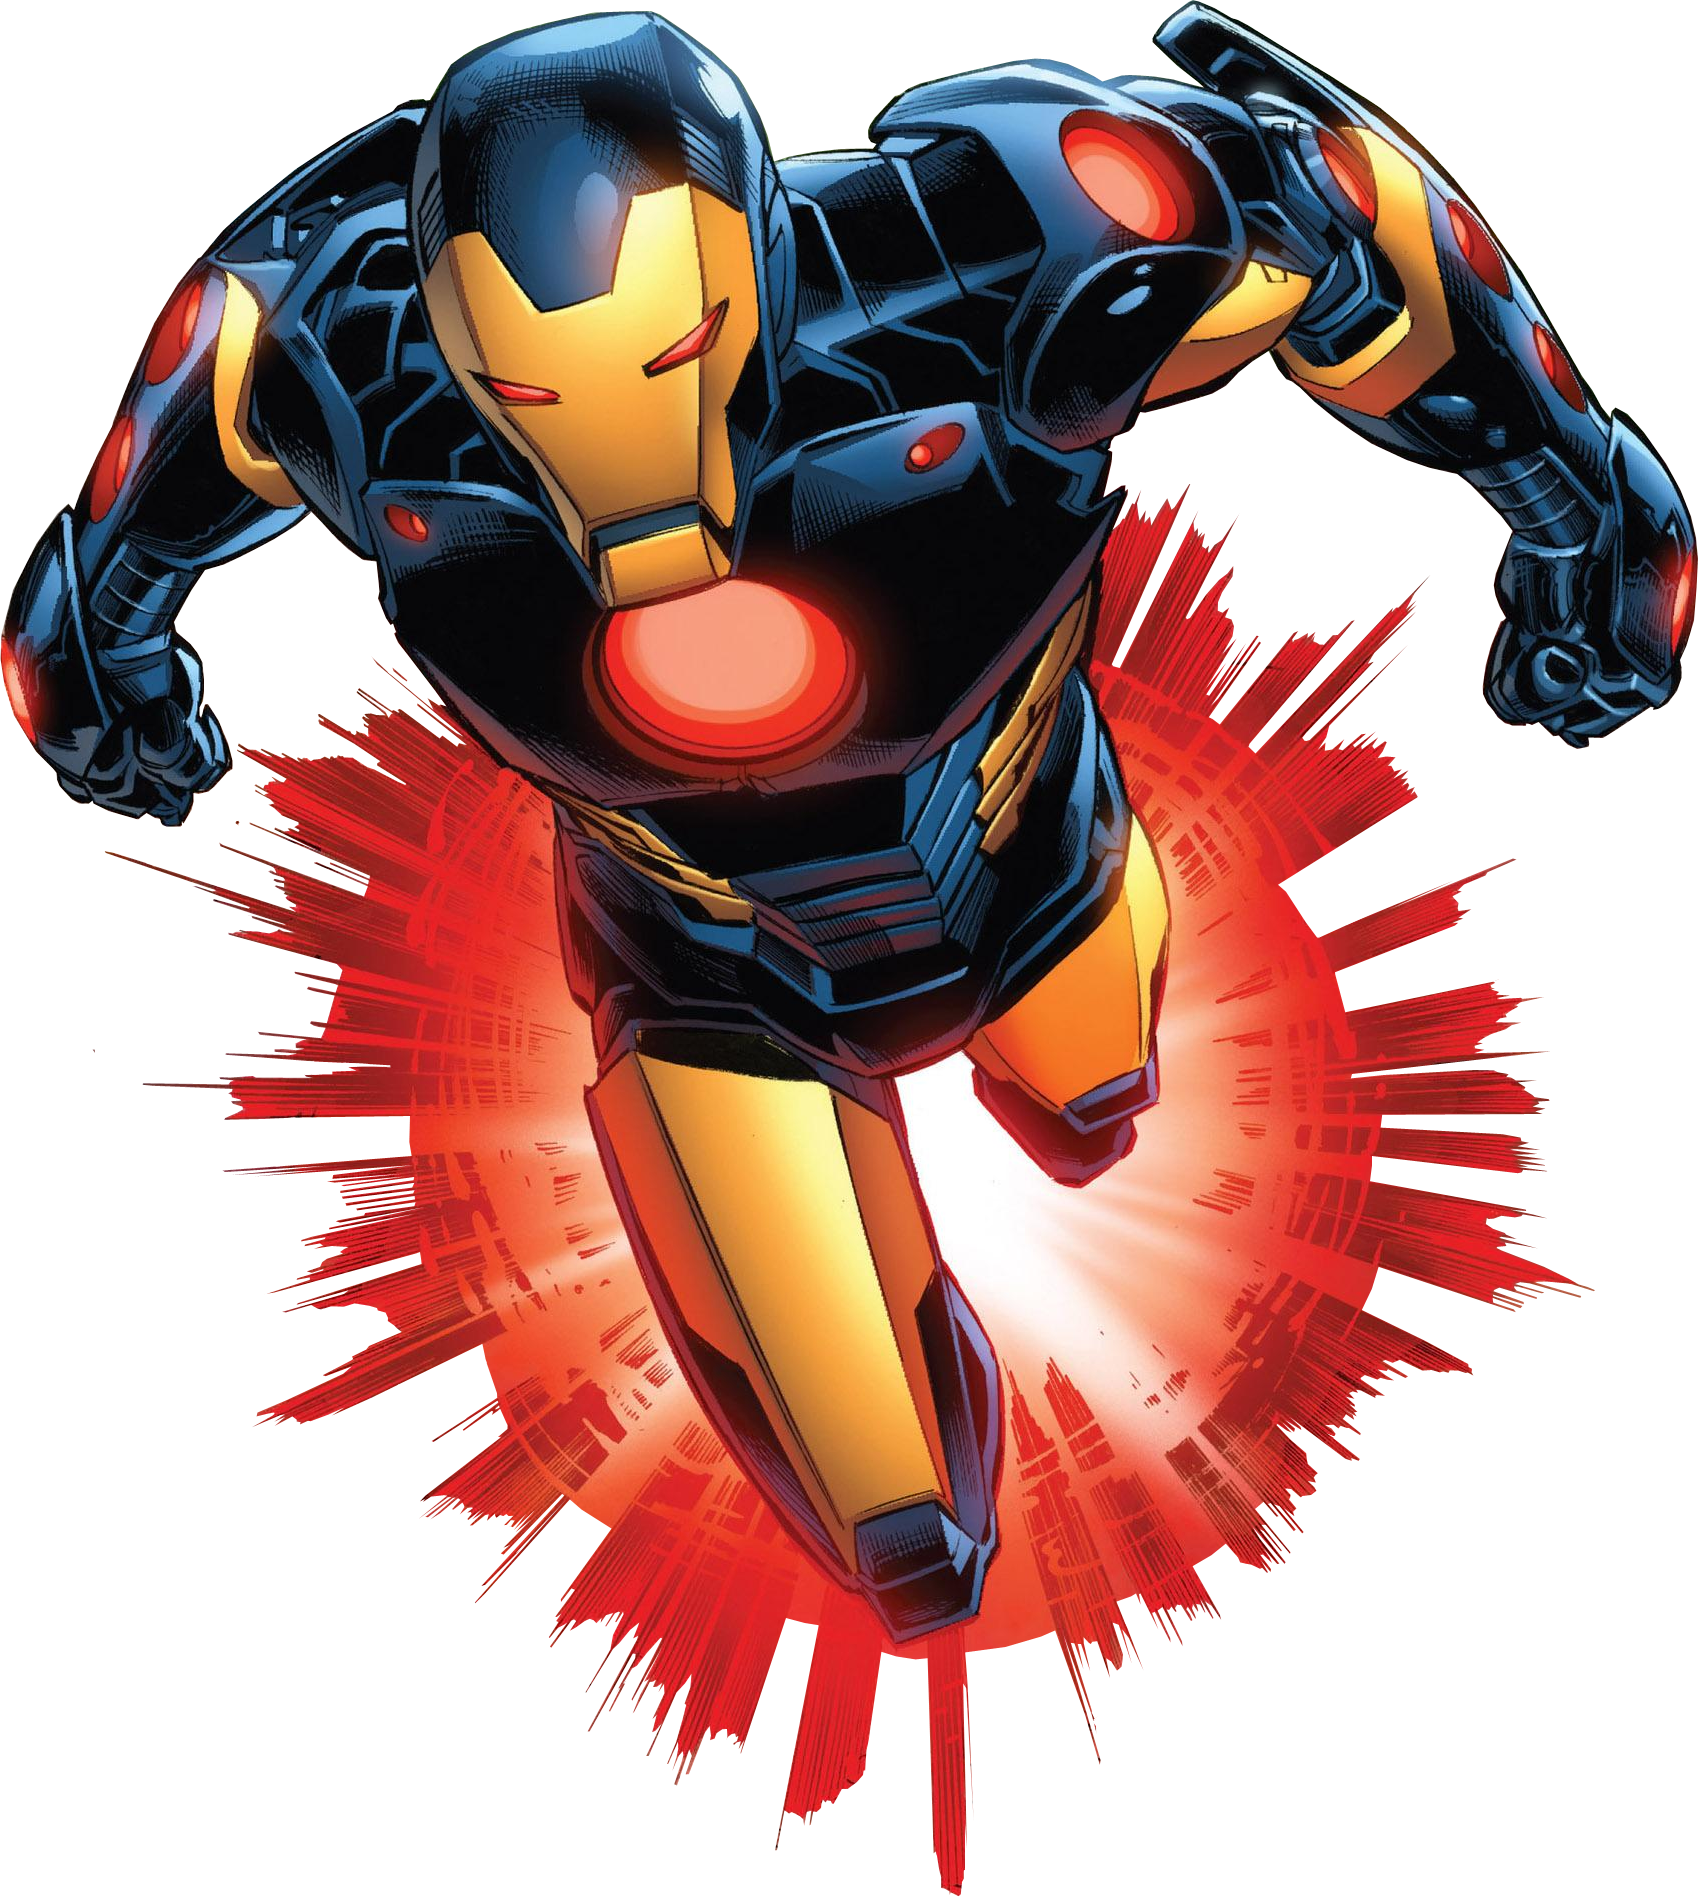 Iron Man Armor Model 28, Marvel Database